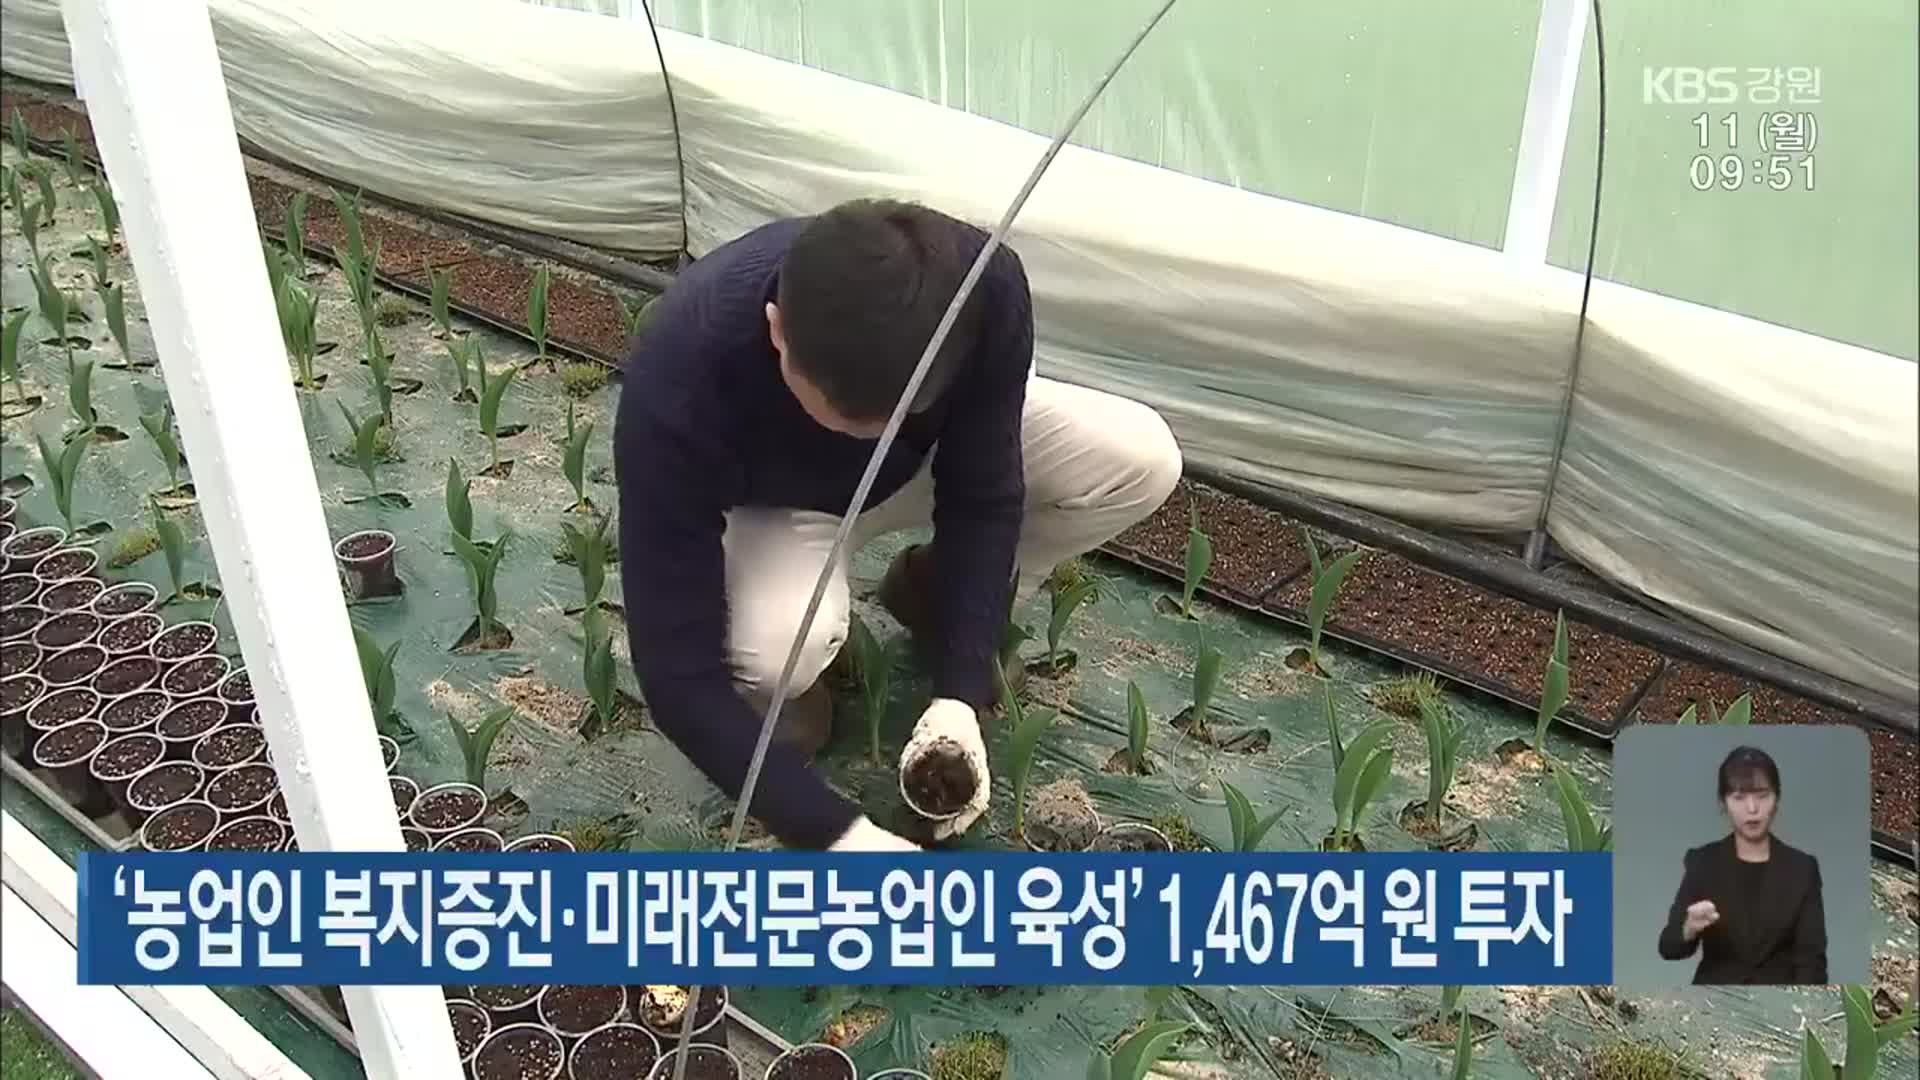 ‘농업인 복지증진·미래전문농업인 육성’ 1,467억 원 투자